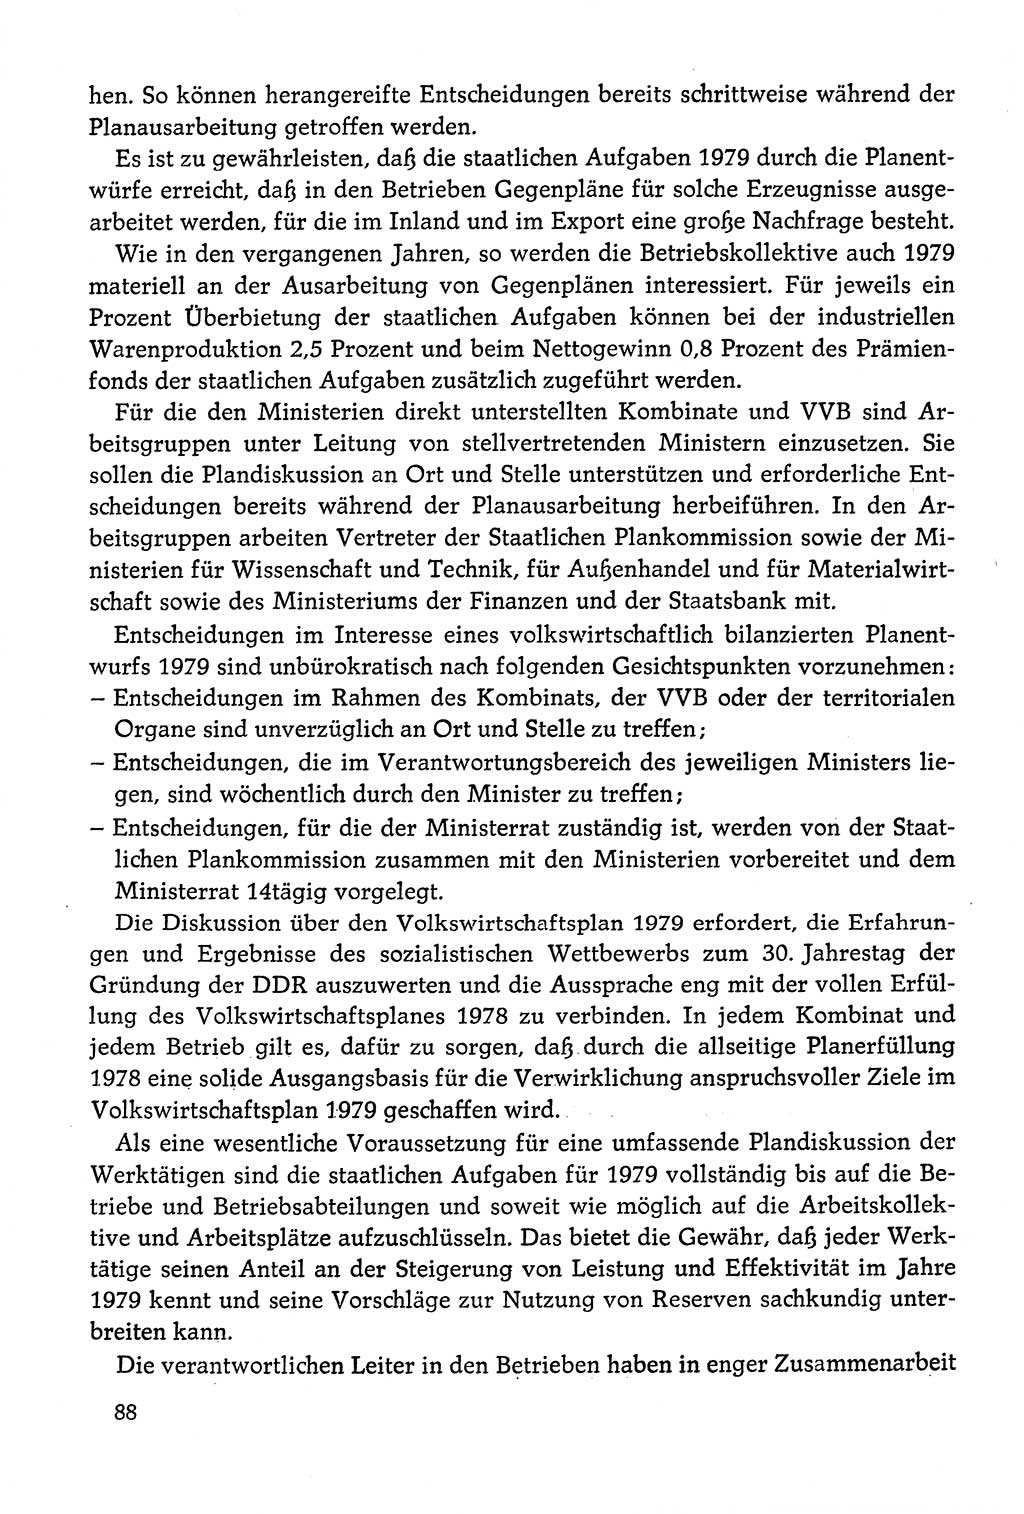 Dokumente der Sozialistischen Einheitspartei Deutschlands (SED) [Deutsche Demokratische Republik (DDR)] 1978-1979, Seite 88 (Dok. SED DDR 1978-1979, S. 88)